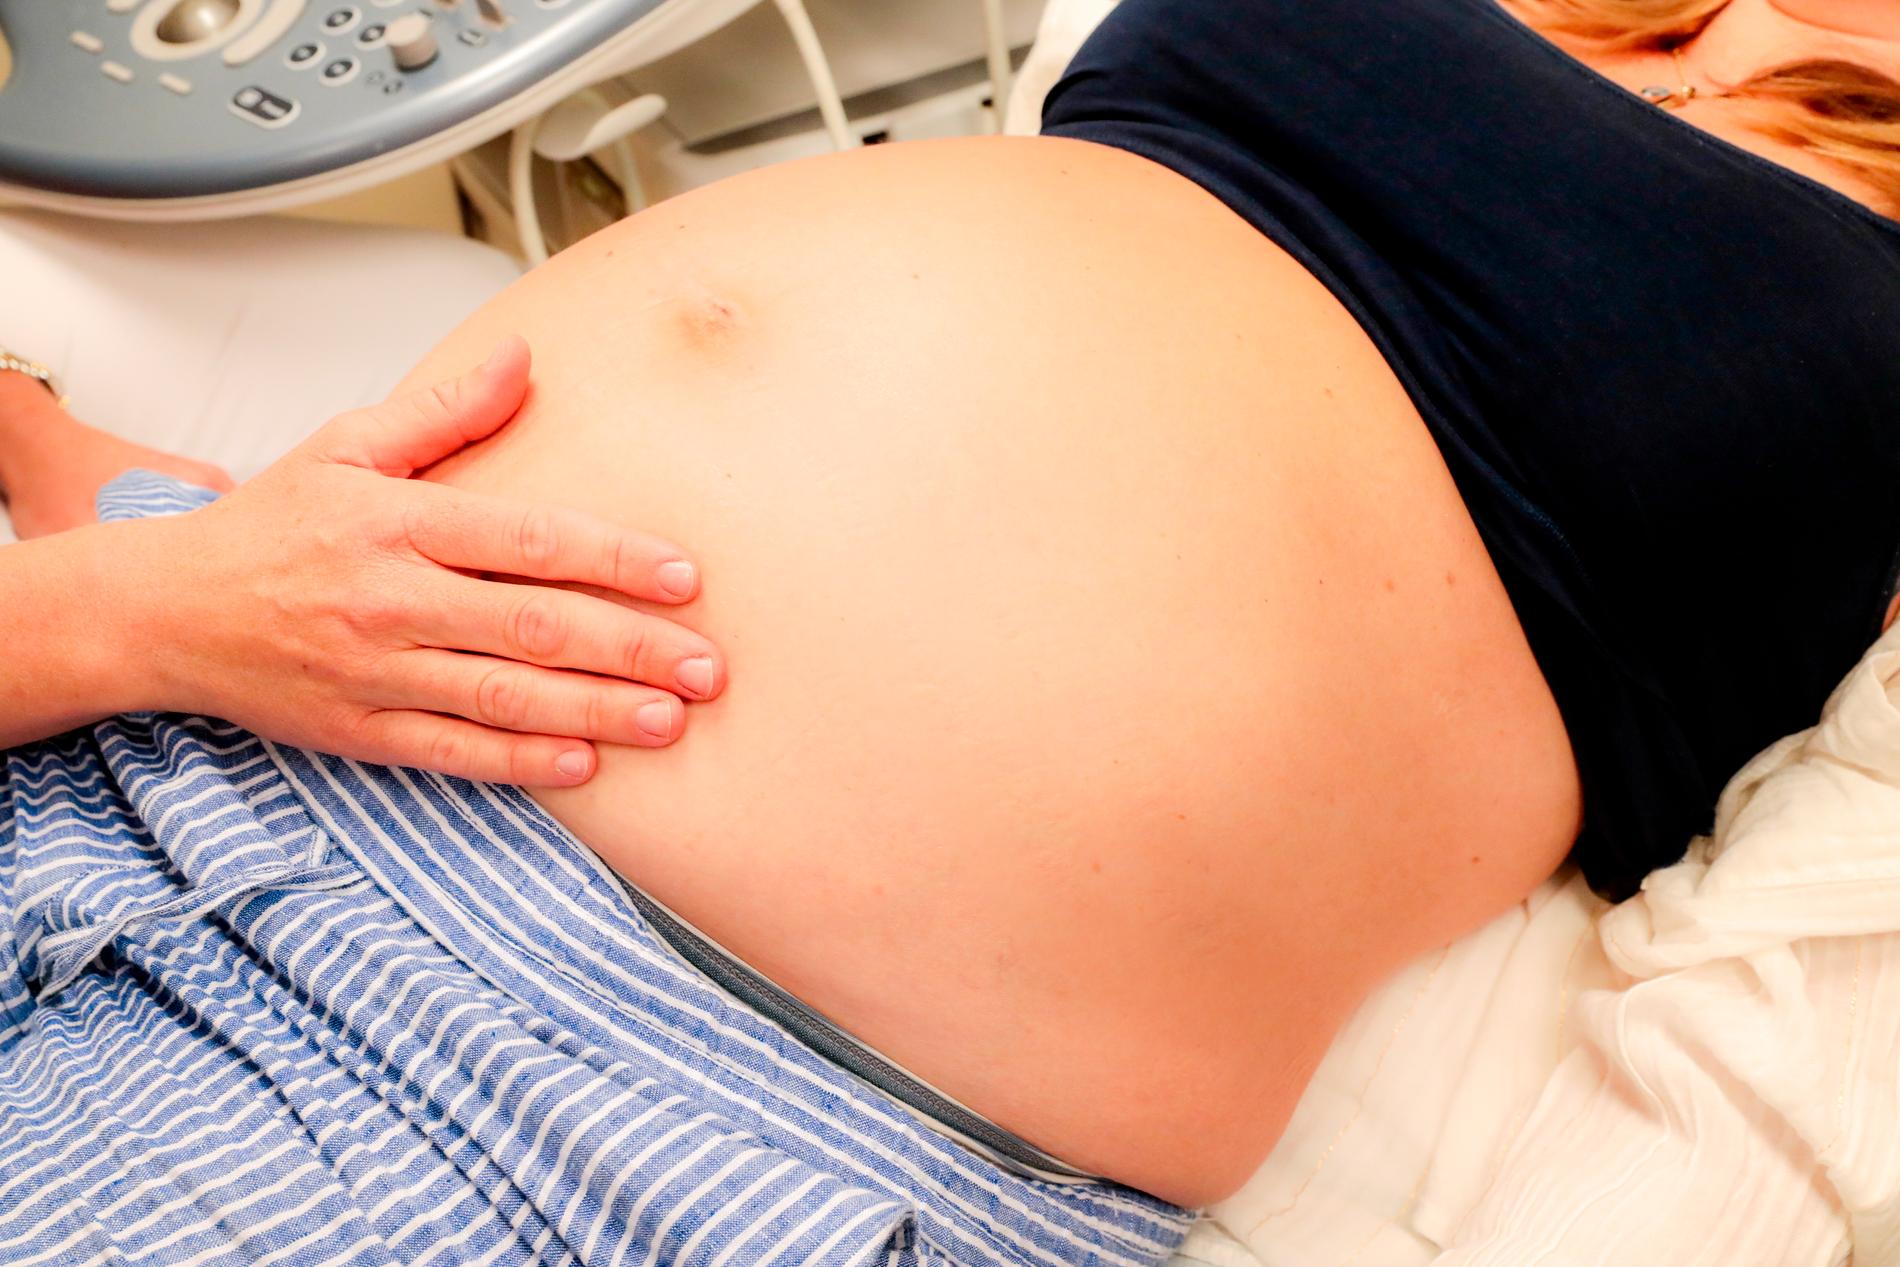 Gravida har enligt en ny arbetsmodell möjlighet att ha samma barnmorska under hela graviditeten. Arkivbild.